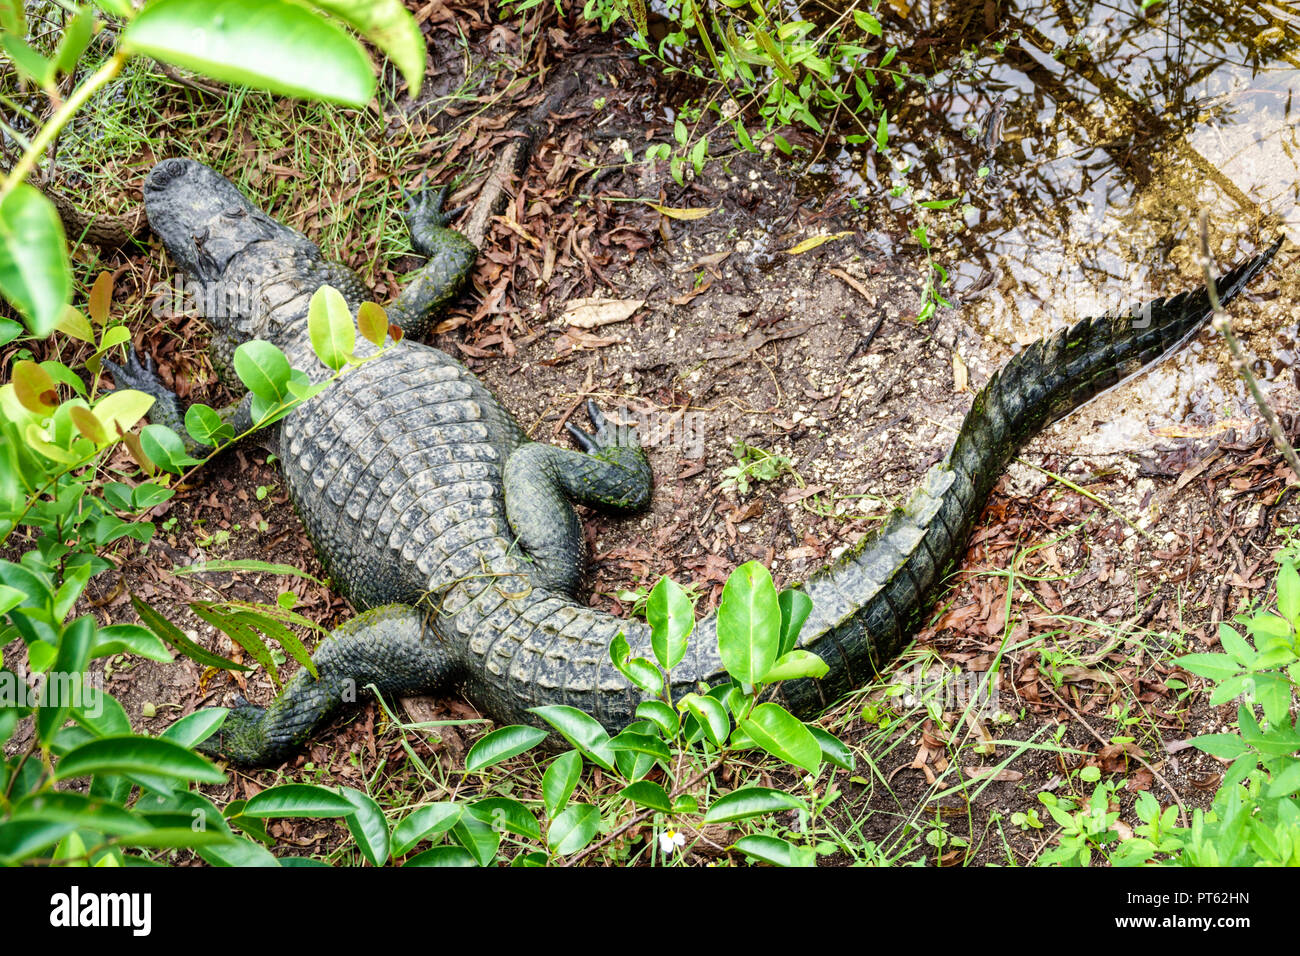 Florida, Everglades, Big Cypress National Preserve, Oasis Visitor Center, Alligator, Besucher reisen Reise touristischer Tourismus Wahrzeichen landmar Stockfoto